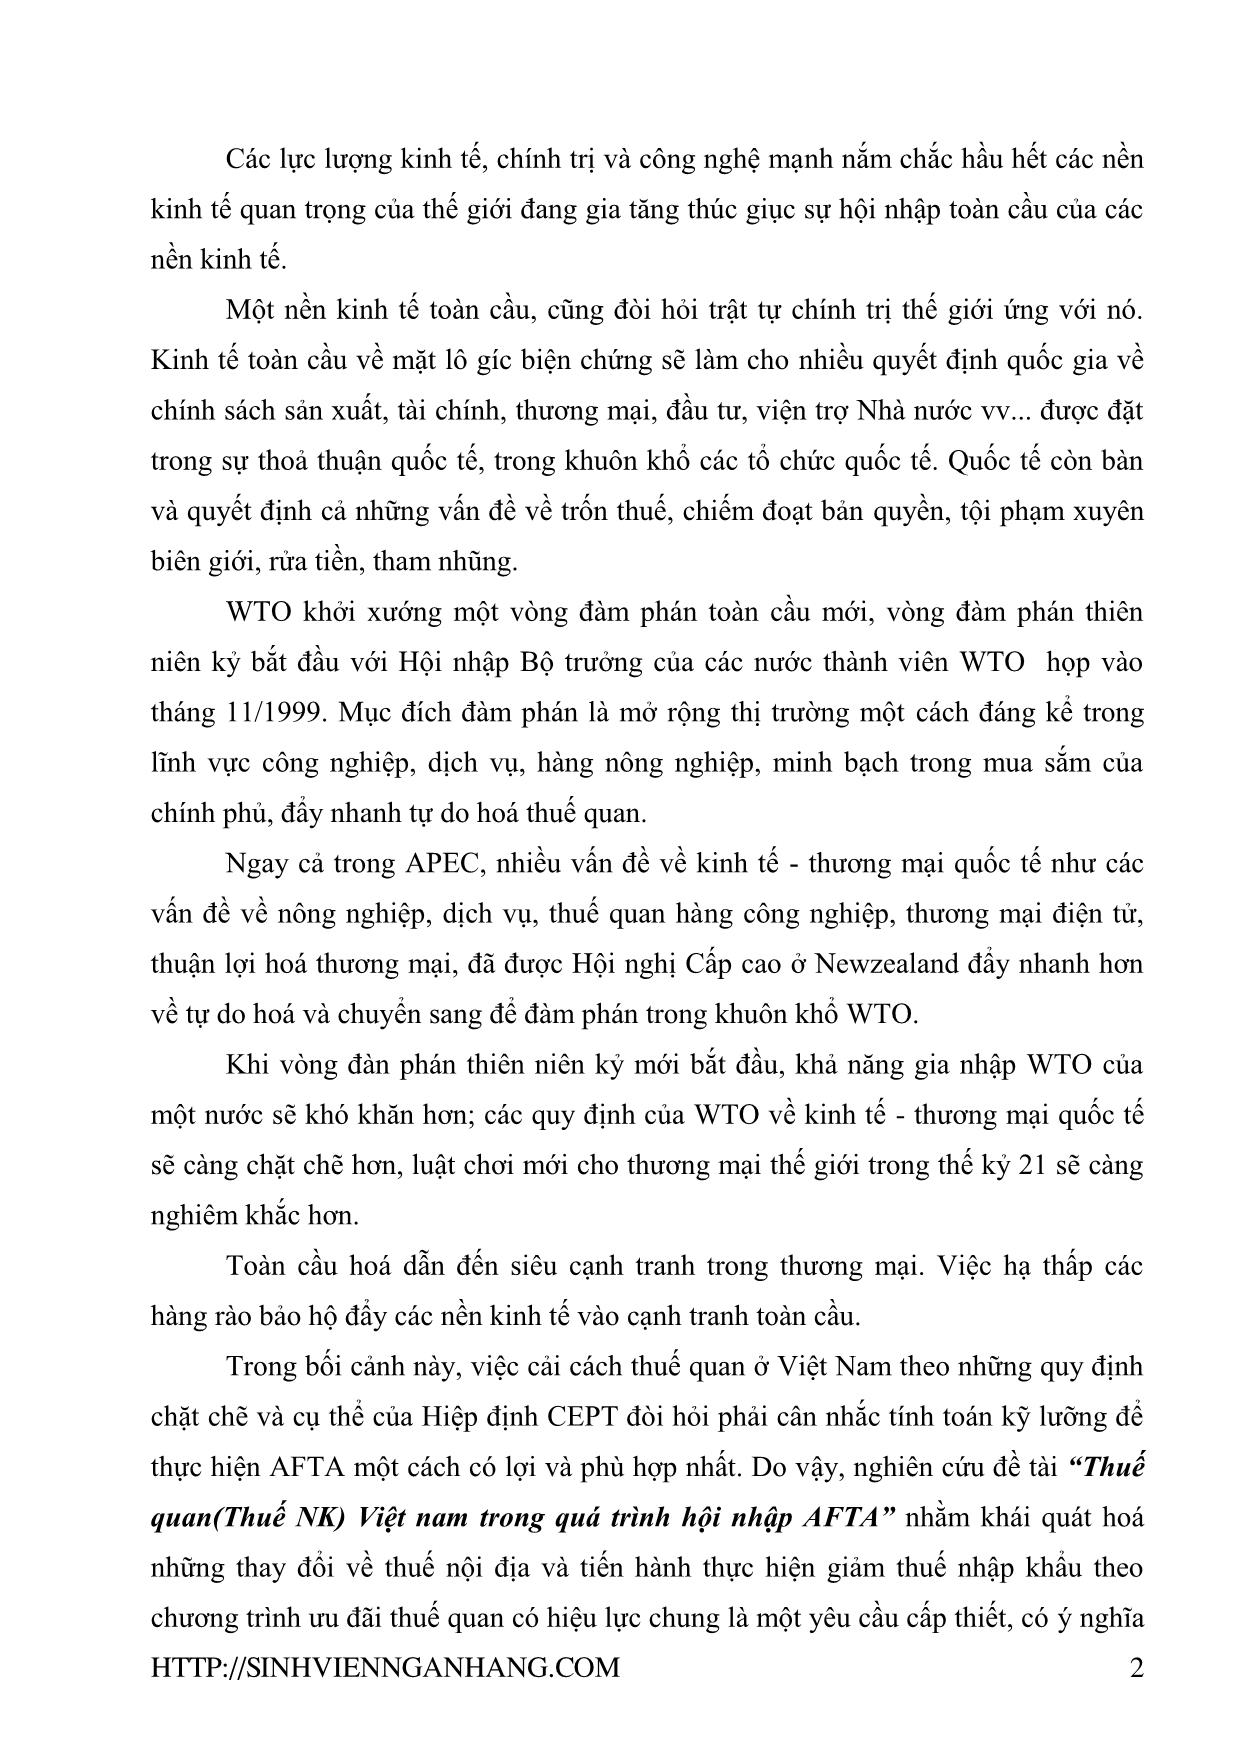 Đề tài Thuế quan (thuế nhập khẩu) Việt Nam trong quá trình hội nhập AFTA trang 2